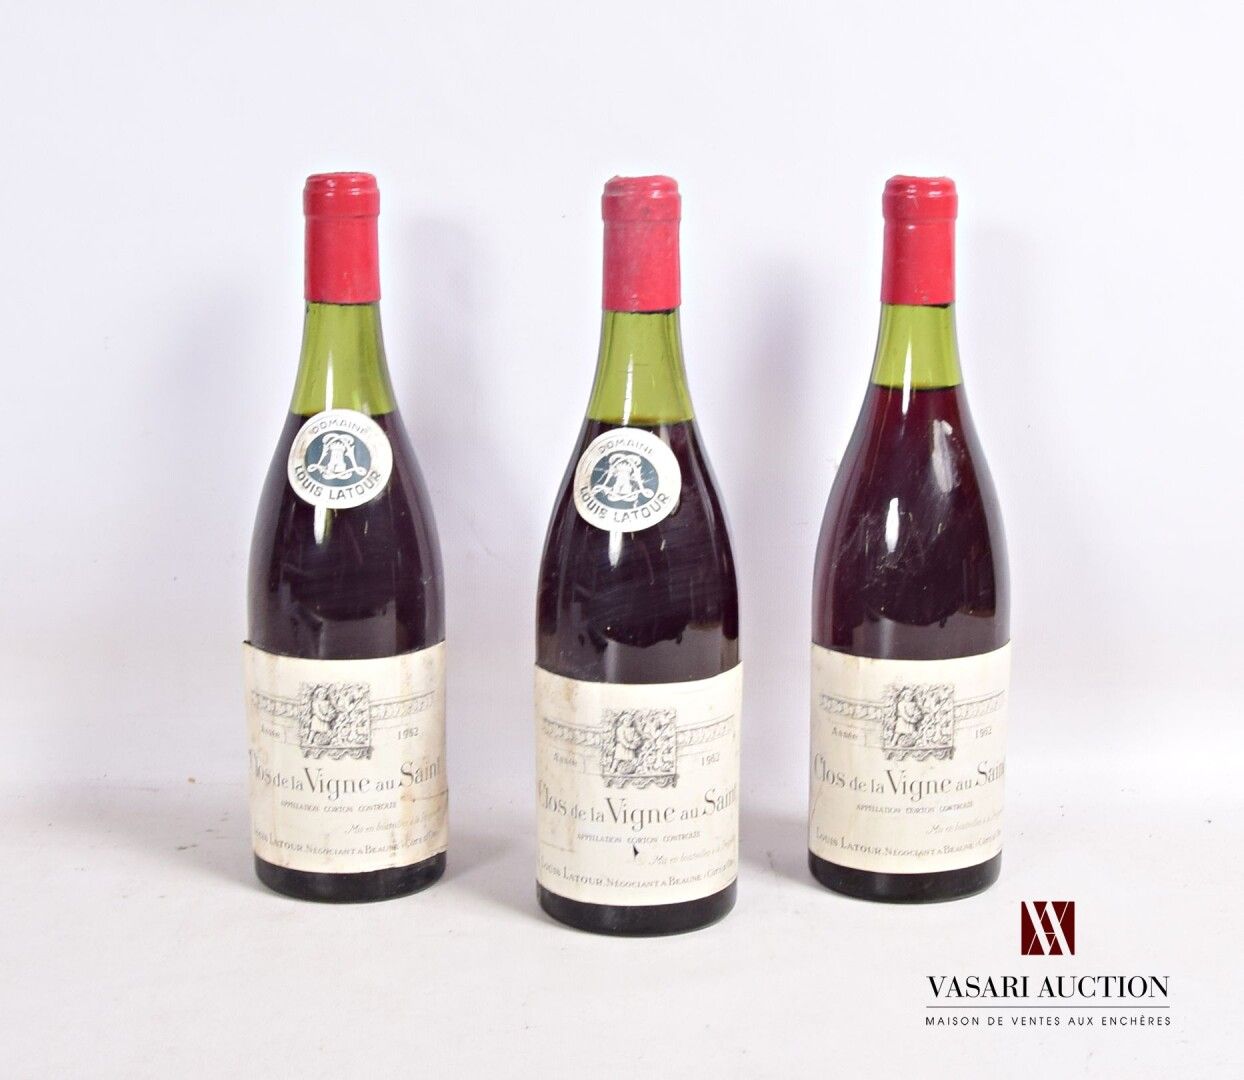 Null 3 bottiglie CORTON Clos de la Vigne au Saint mise L. Latour neg. 1962

	Et:&hellip;